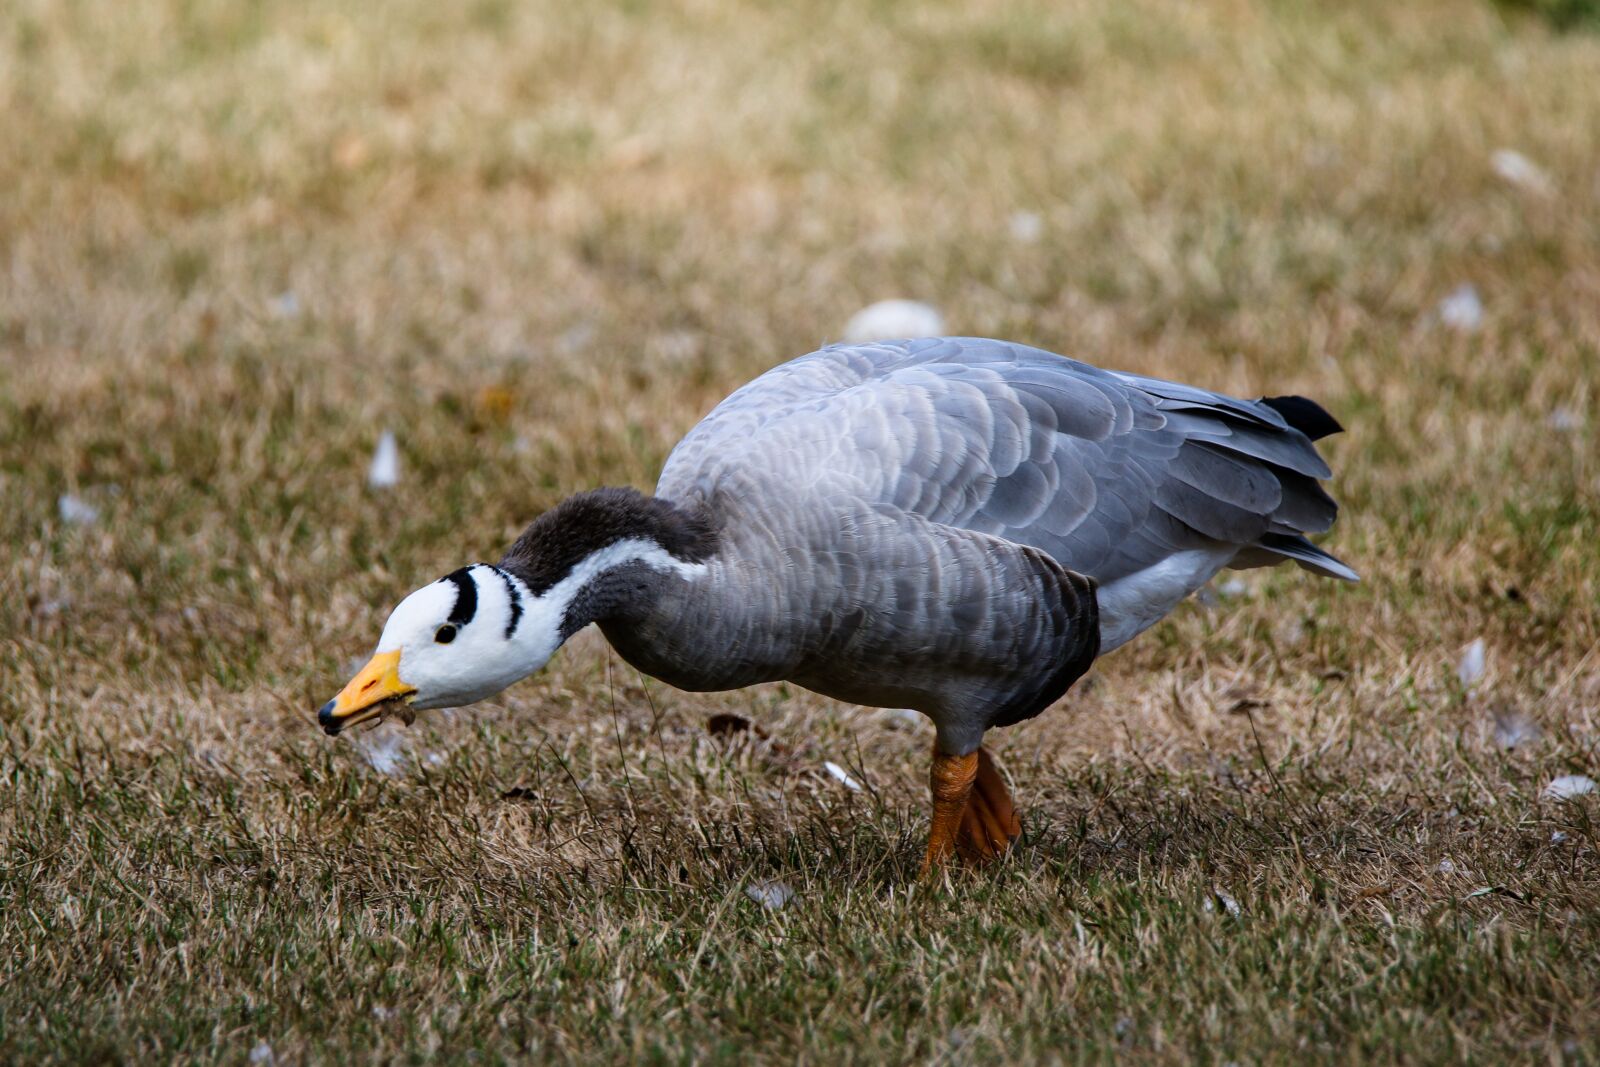 Canon EOS 70D sample photo. Animals, bird, goose photography